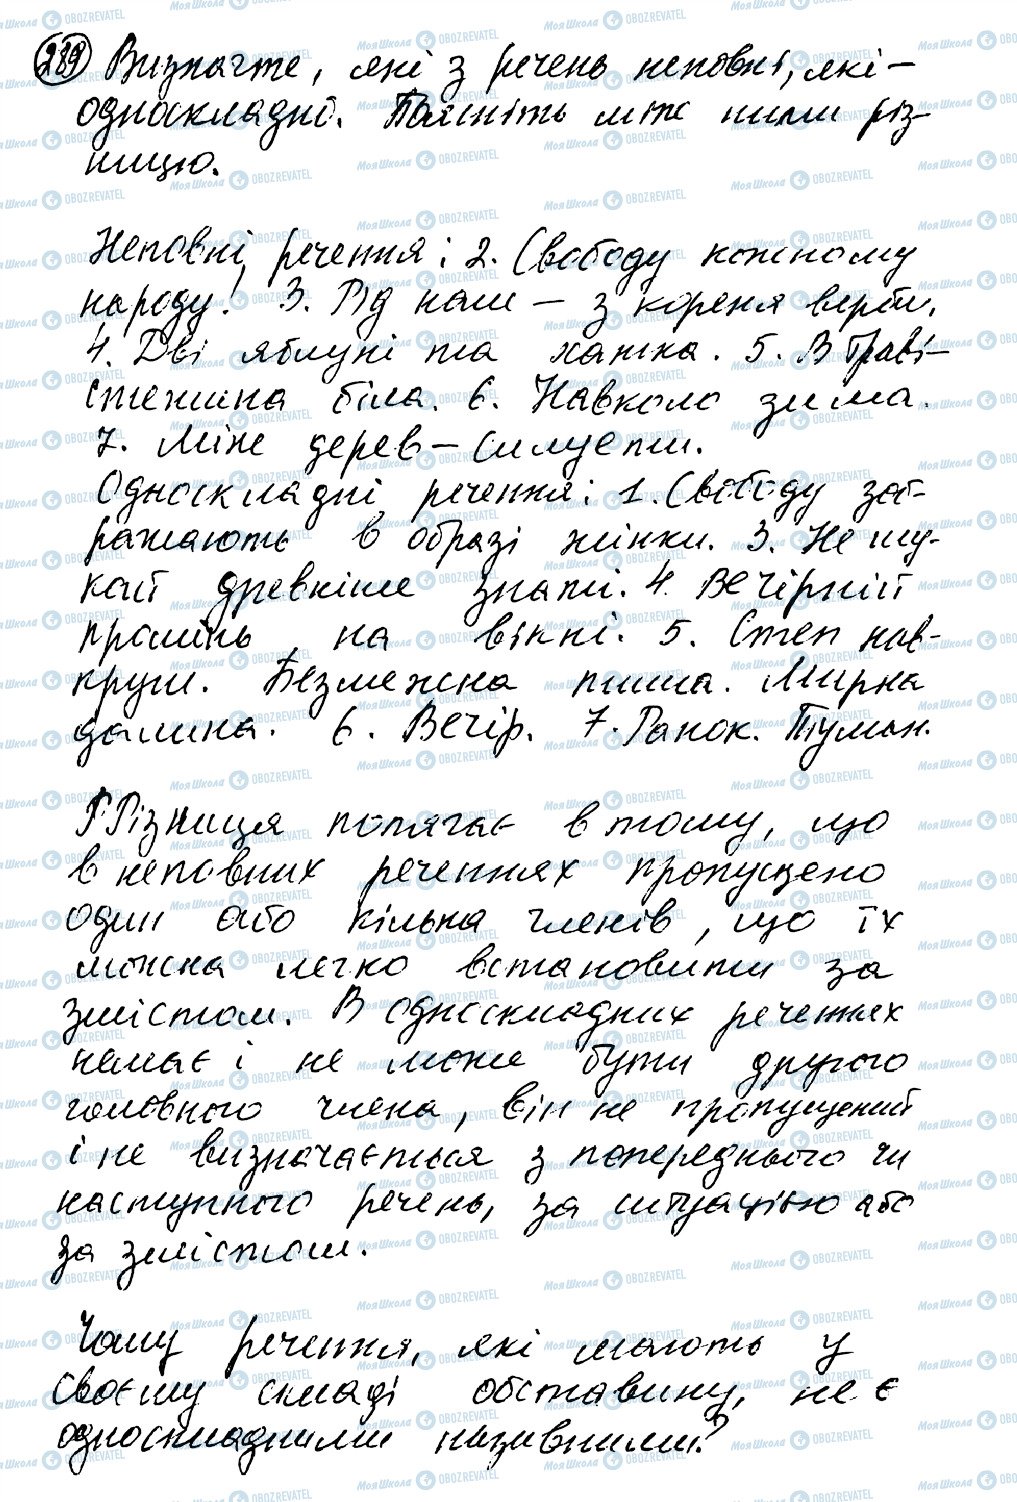 ГДЗ Українська мова 8 клас сторінка 289